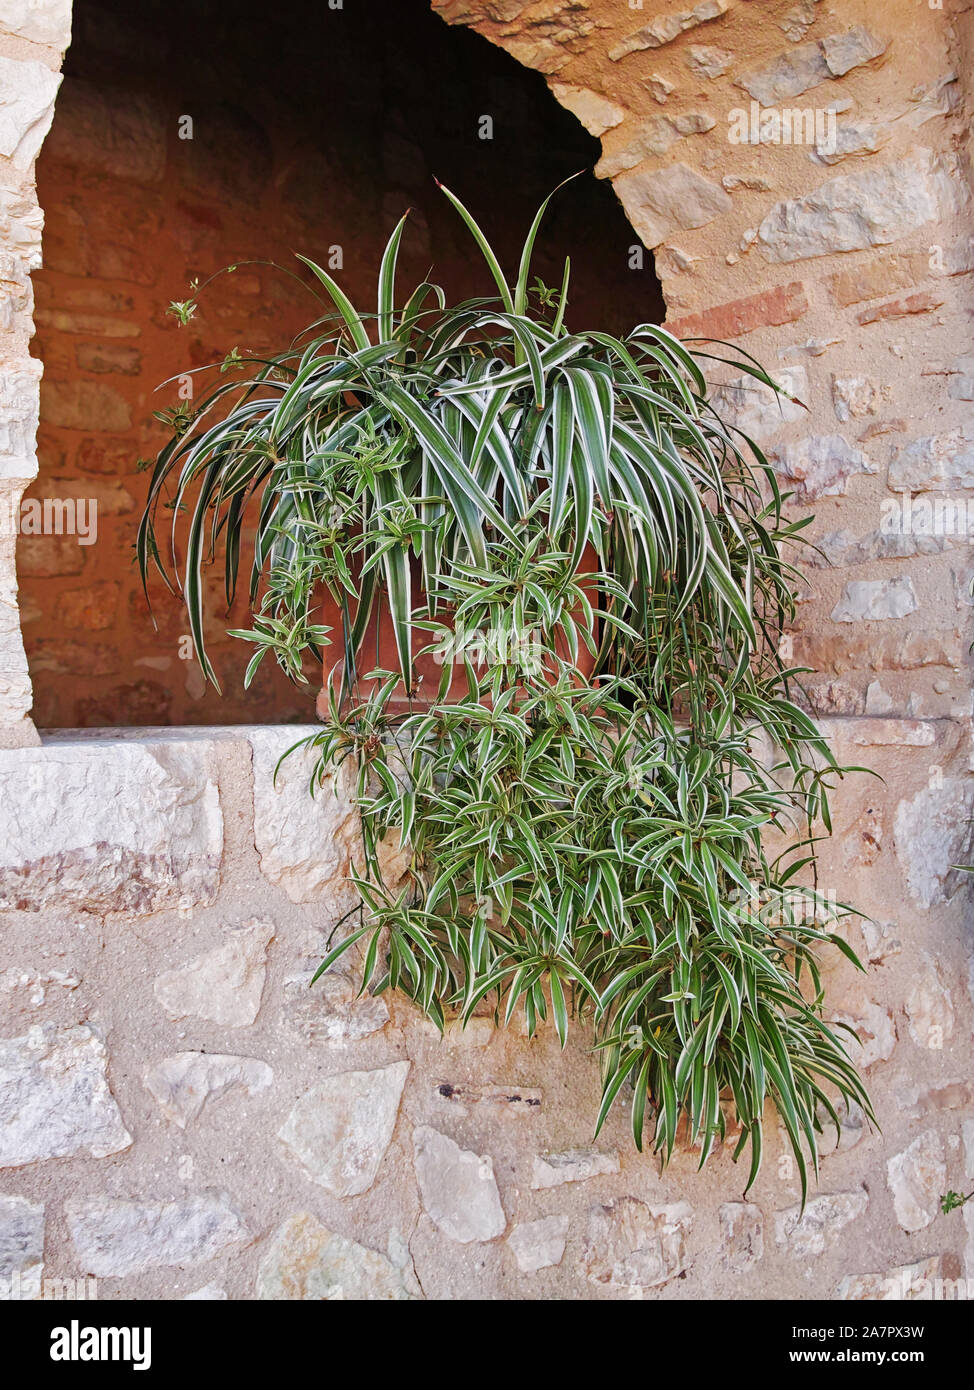 specimen of spider plant, Chlorophytum comosum 'Vittatum' Stock Photo